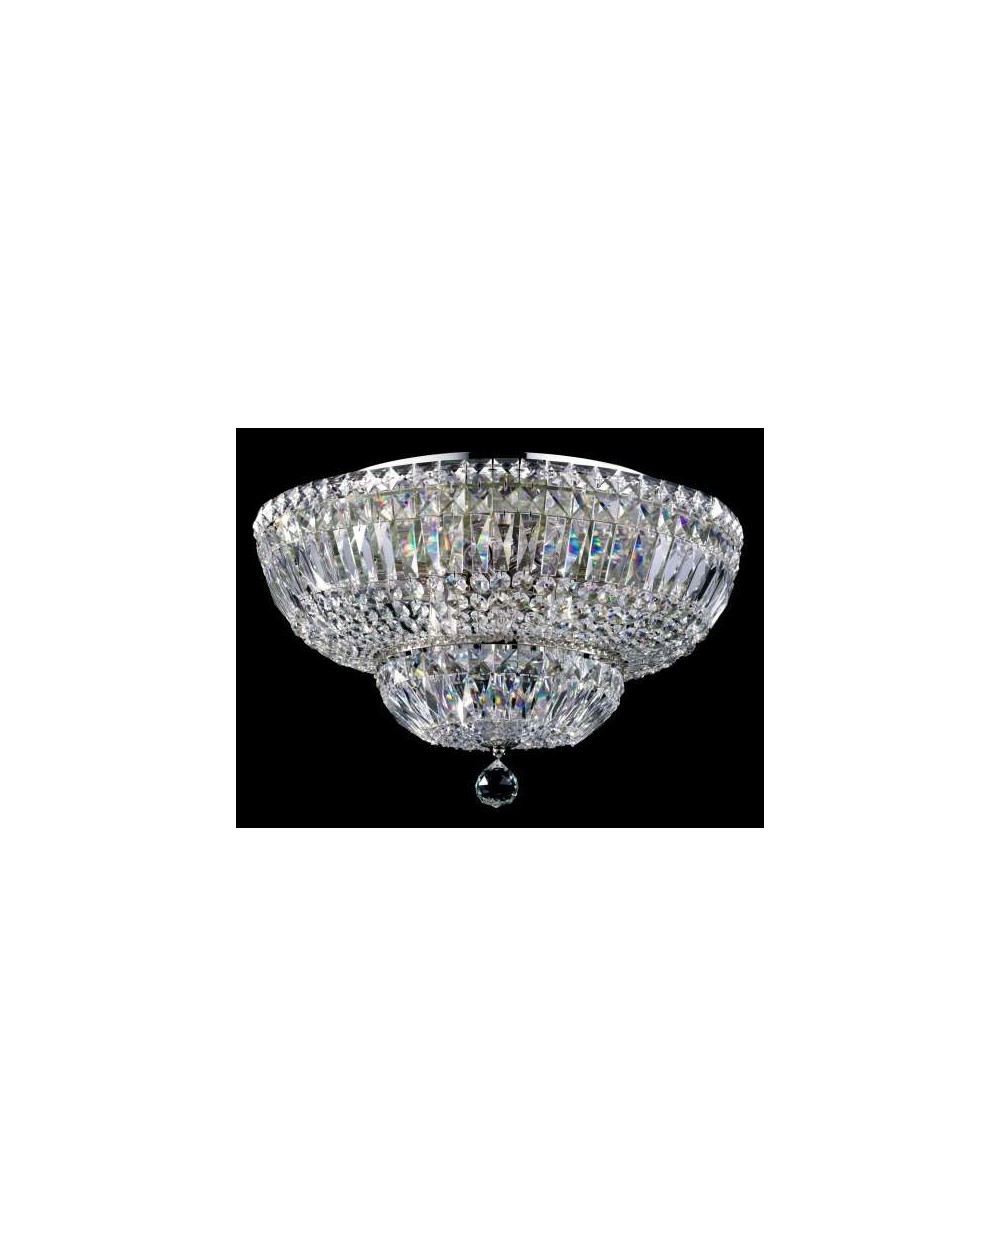 Lampa sufitowa BASFOR Maytoni klasyczna kryształowa